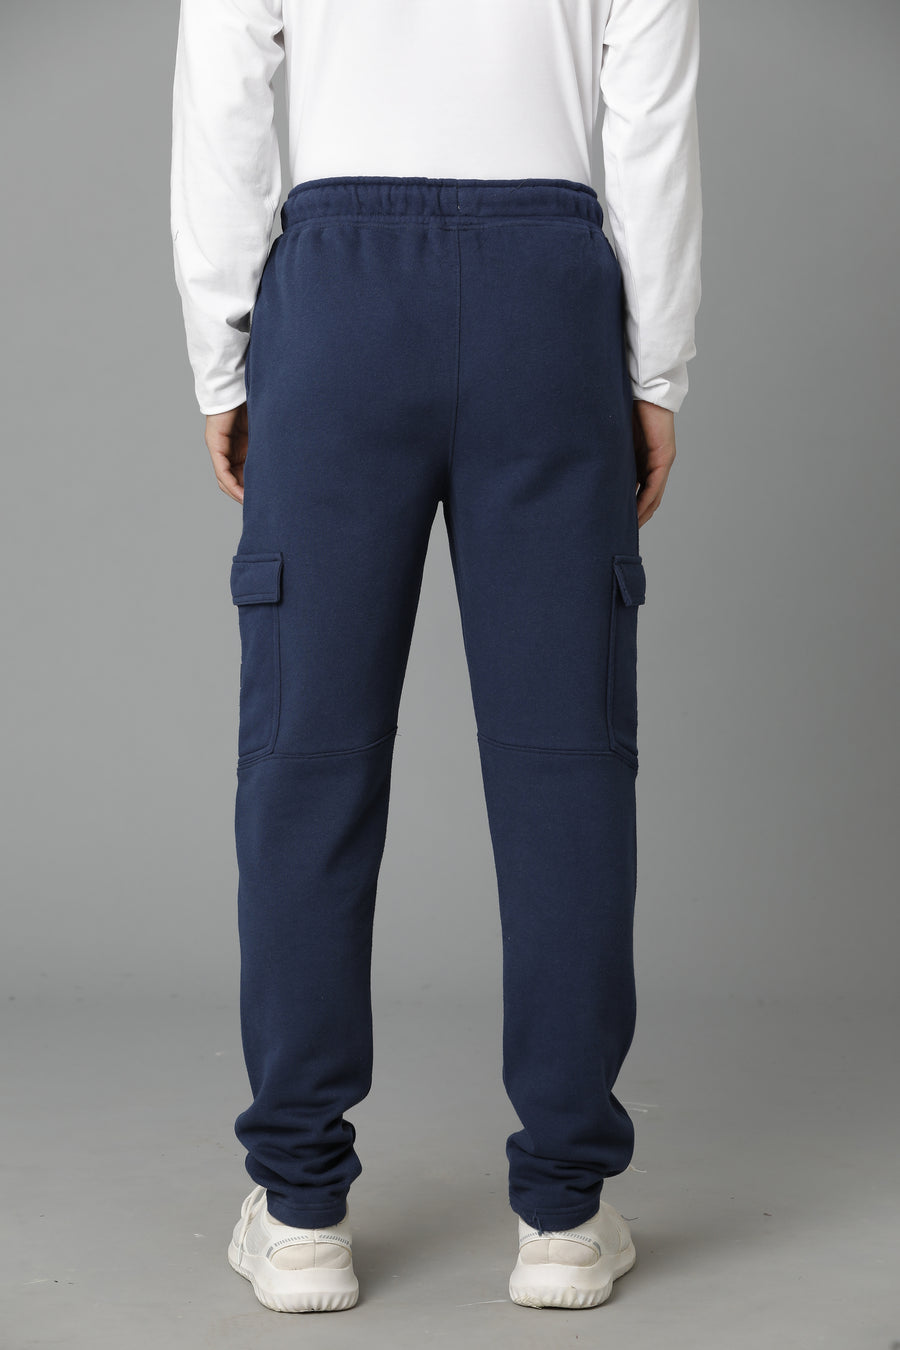 Voi Jeans Men's Navy Dress Blue Trackpant - VOTP0139